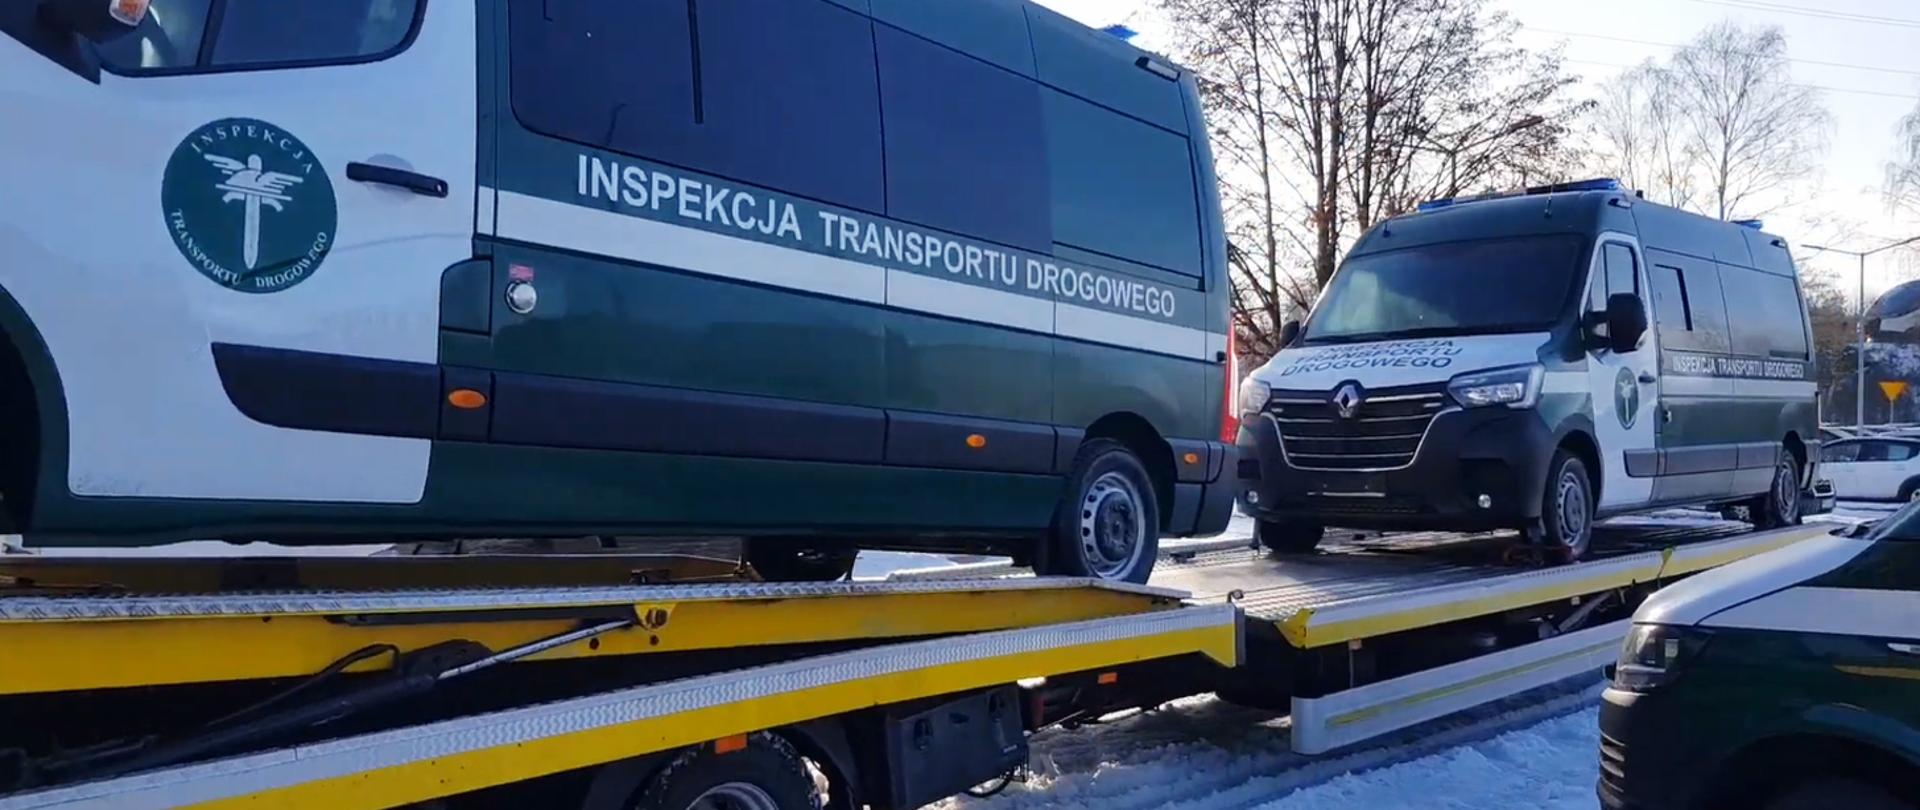 Inspekcyjne furgony, które dotarły do Wojewódzkiego Inspektoratu Transportu Drogowego w Katowicach
